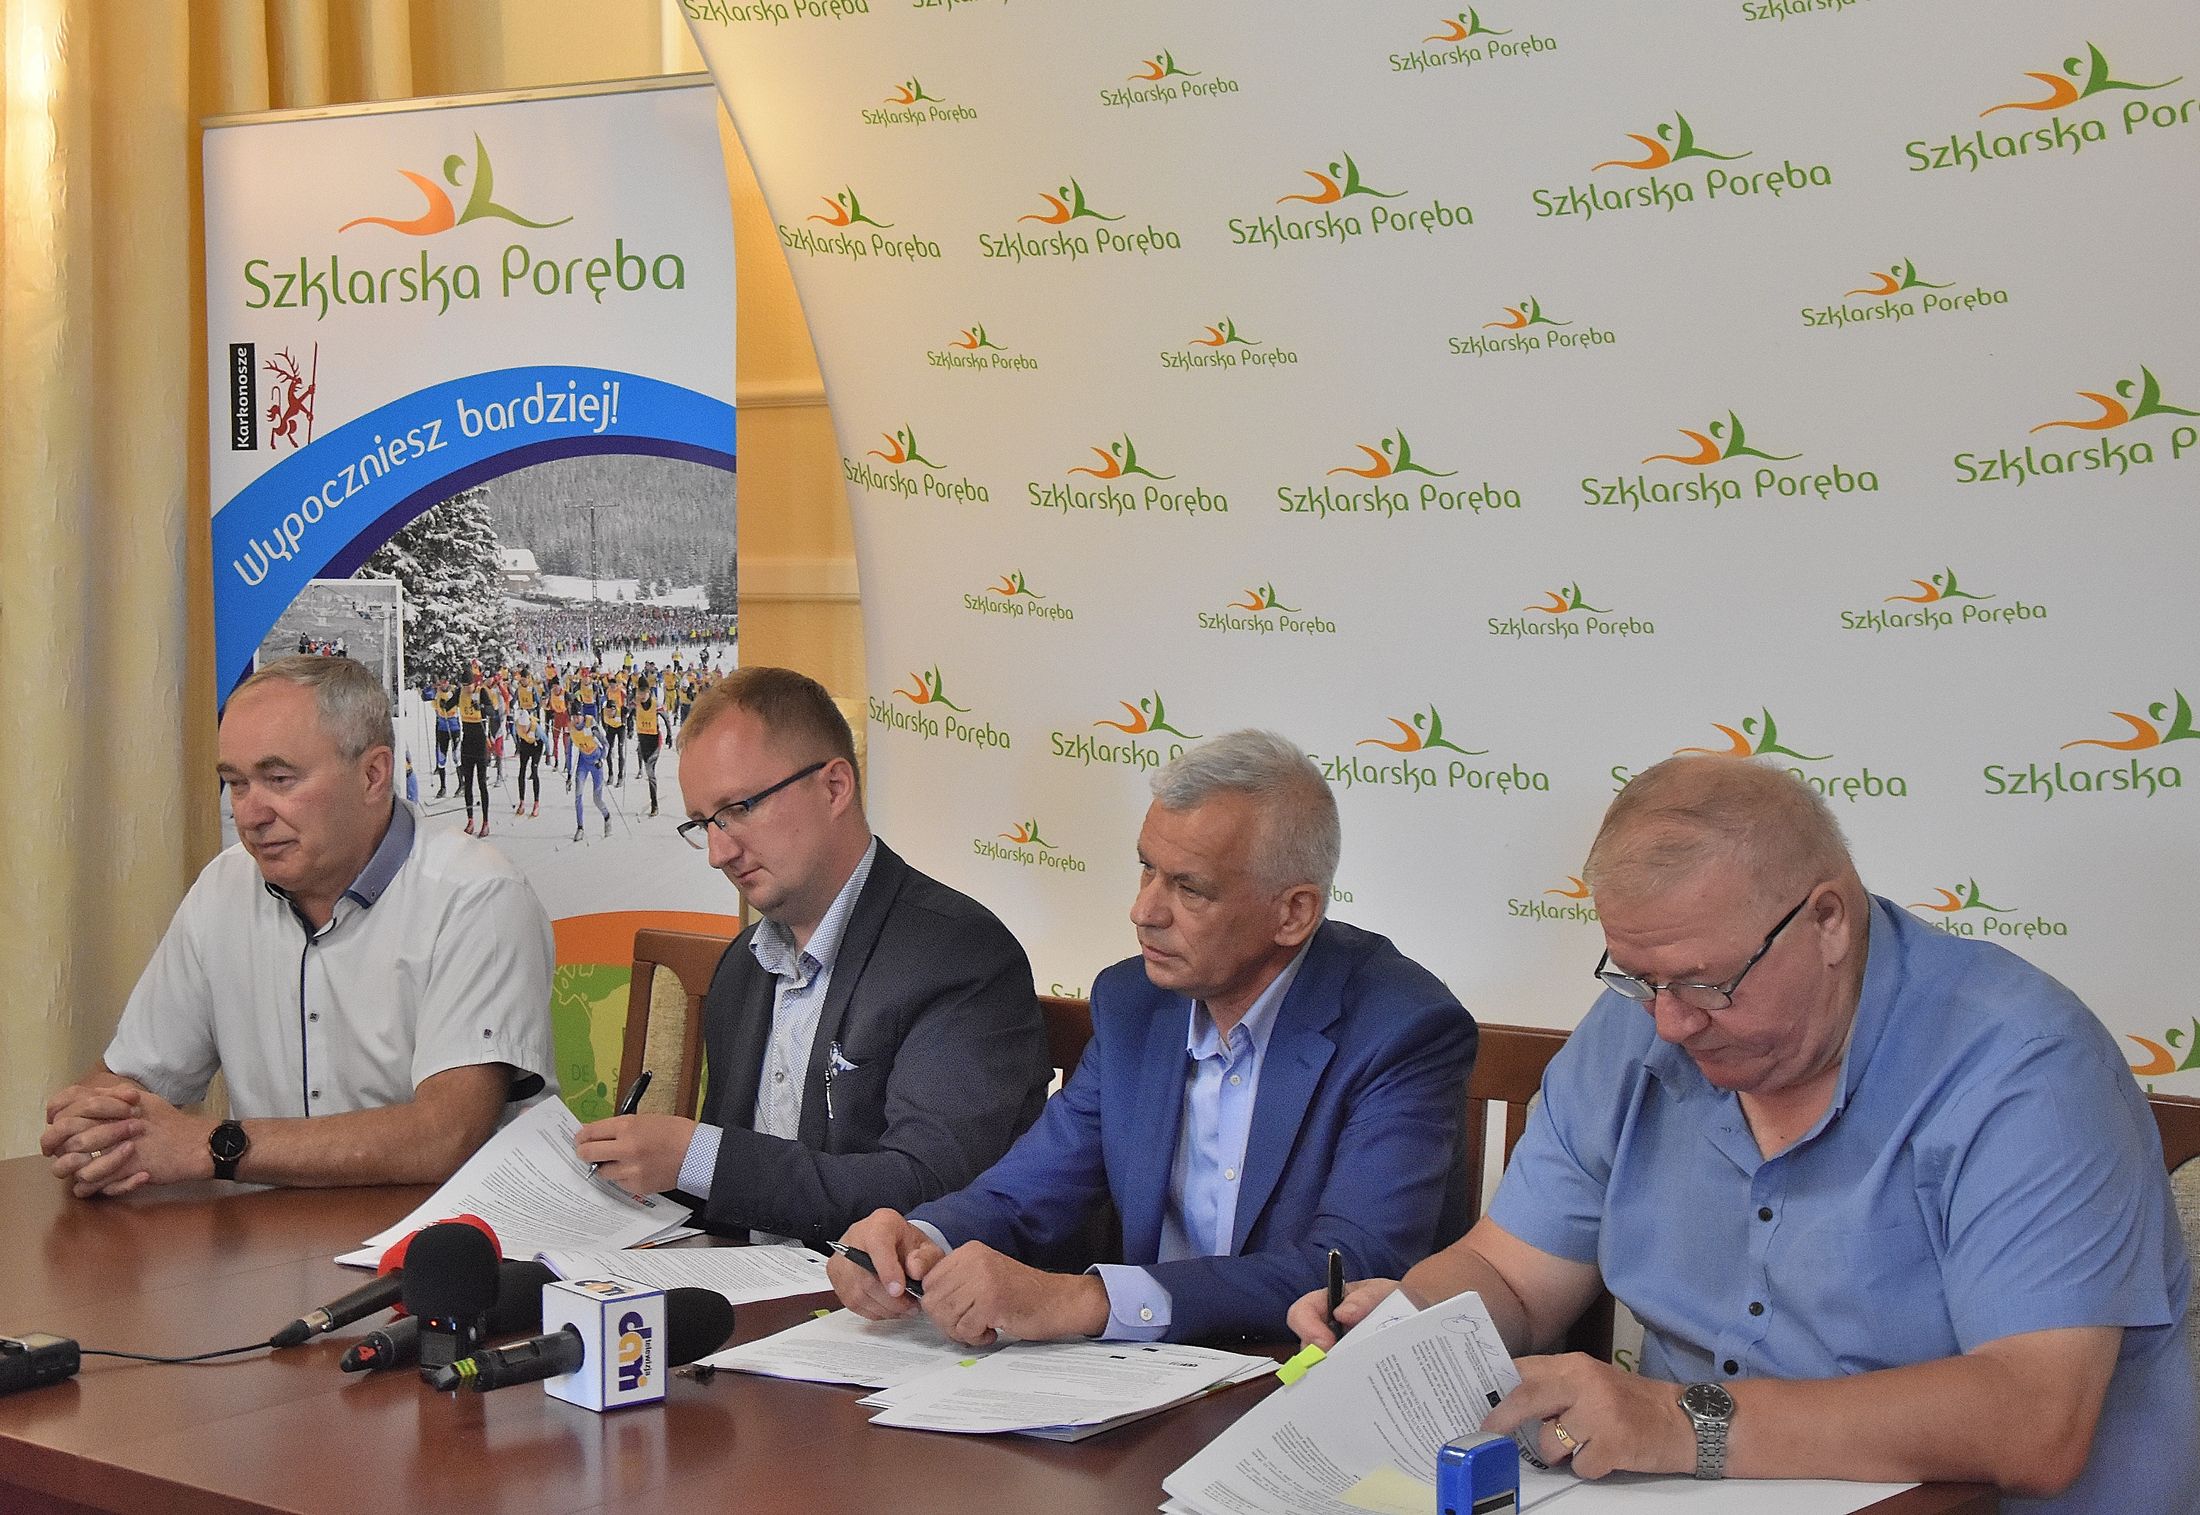 Podpisanie umów na wykonanie punktów widokowych w Szklarskiej Porębie 28 sierpnia 2019 r.